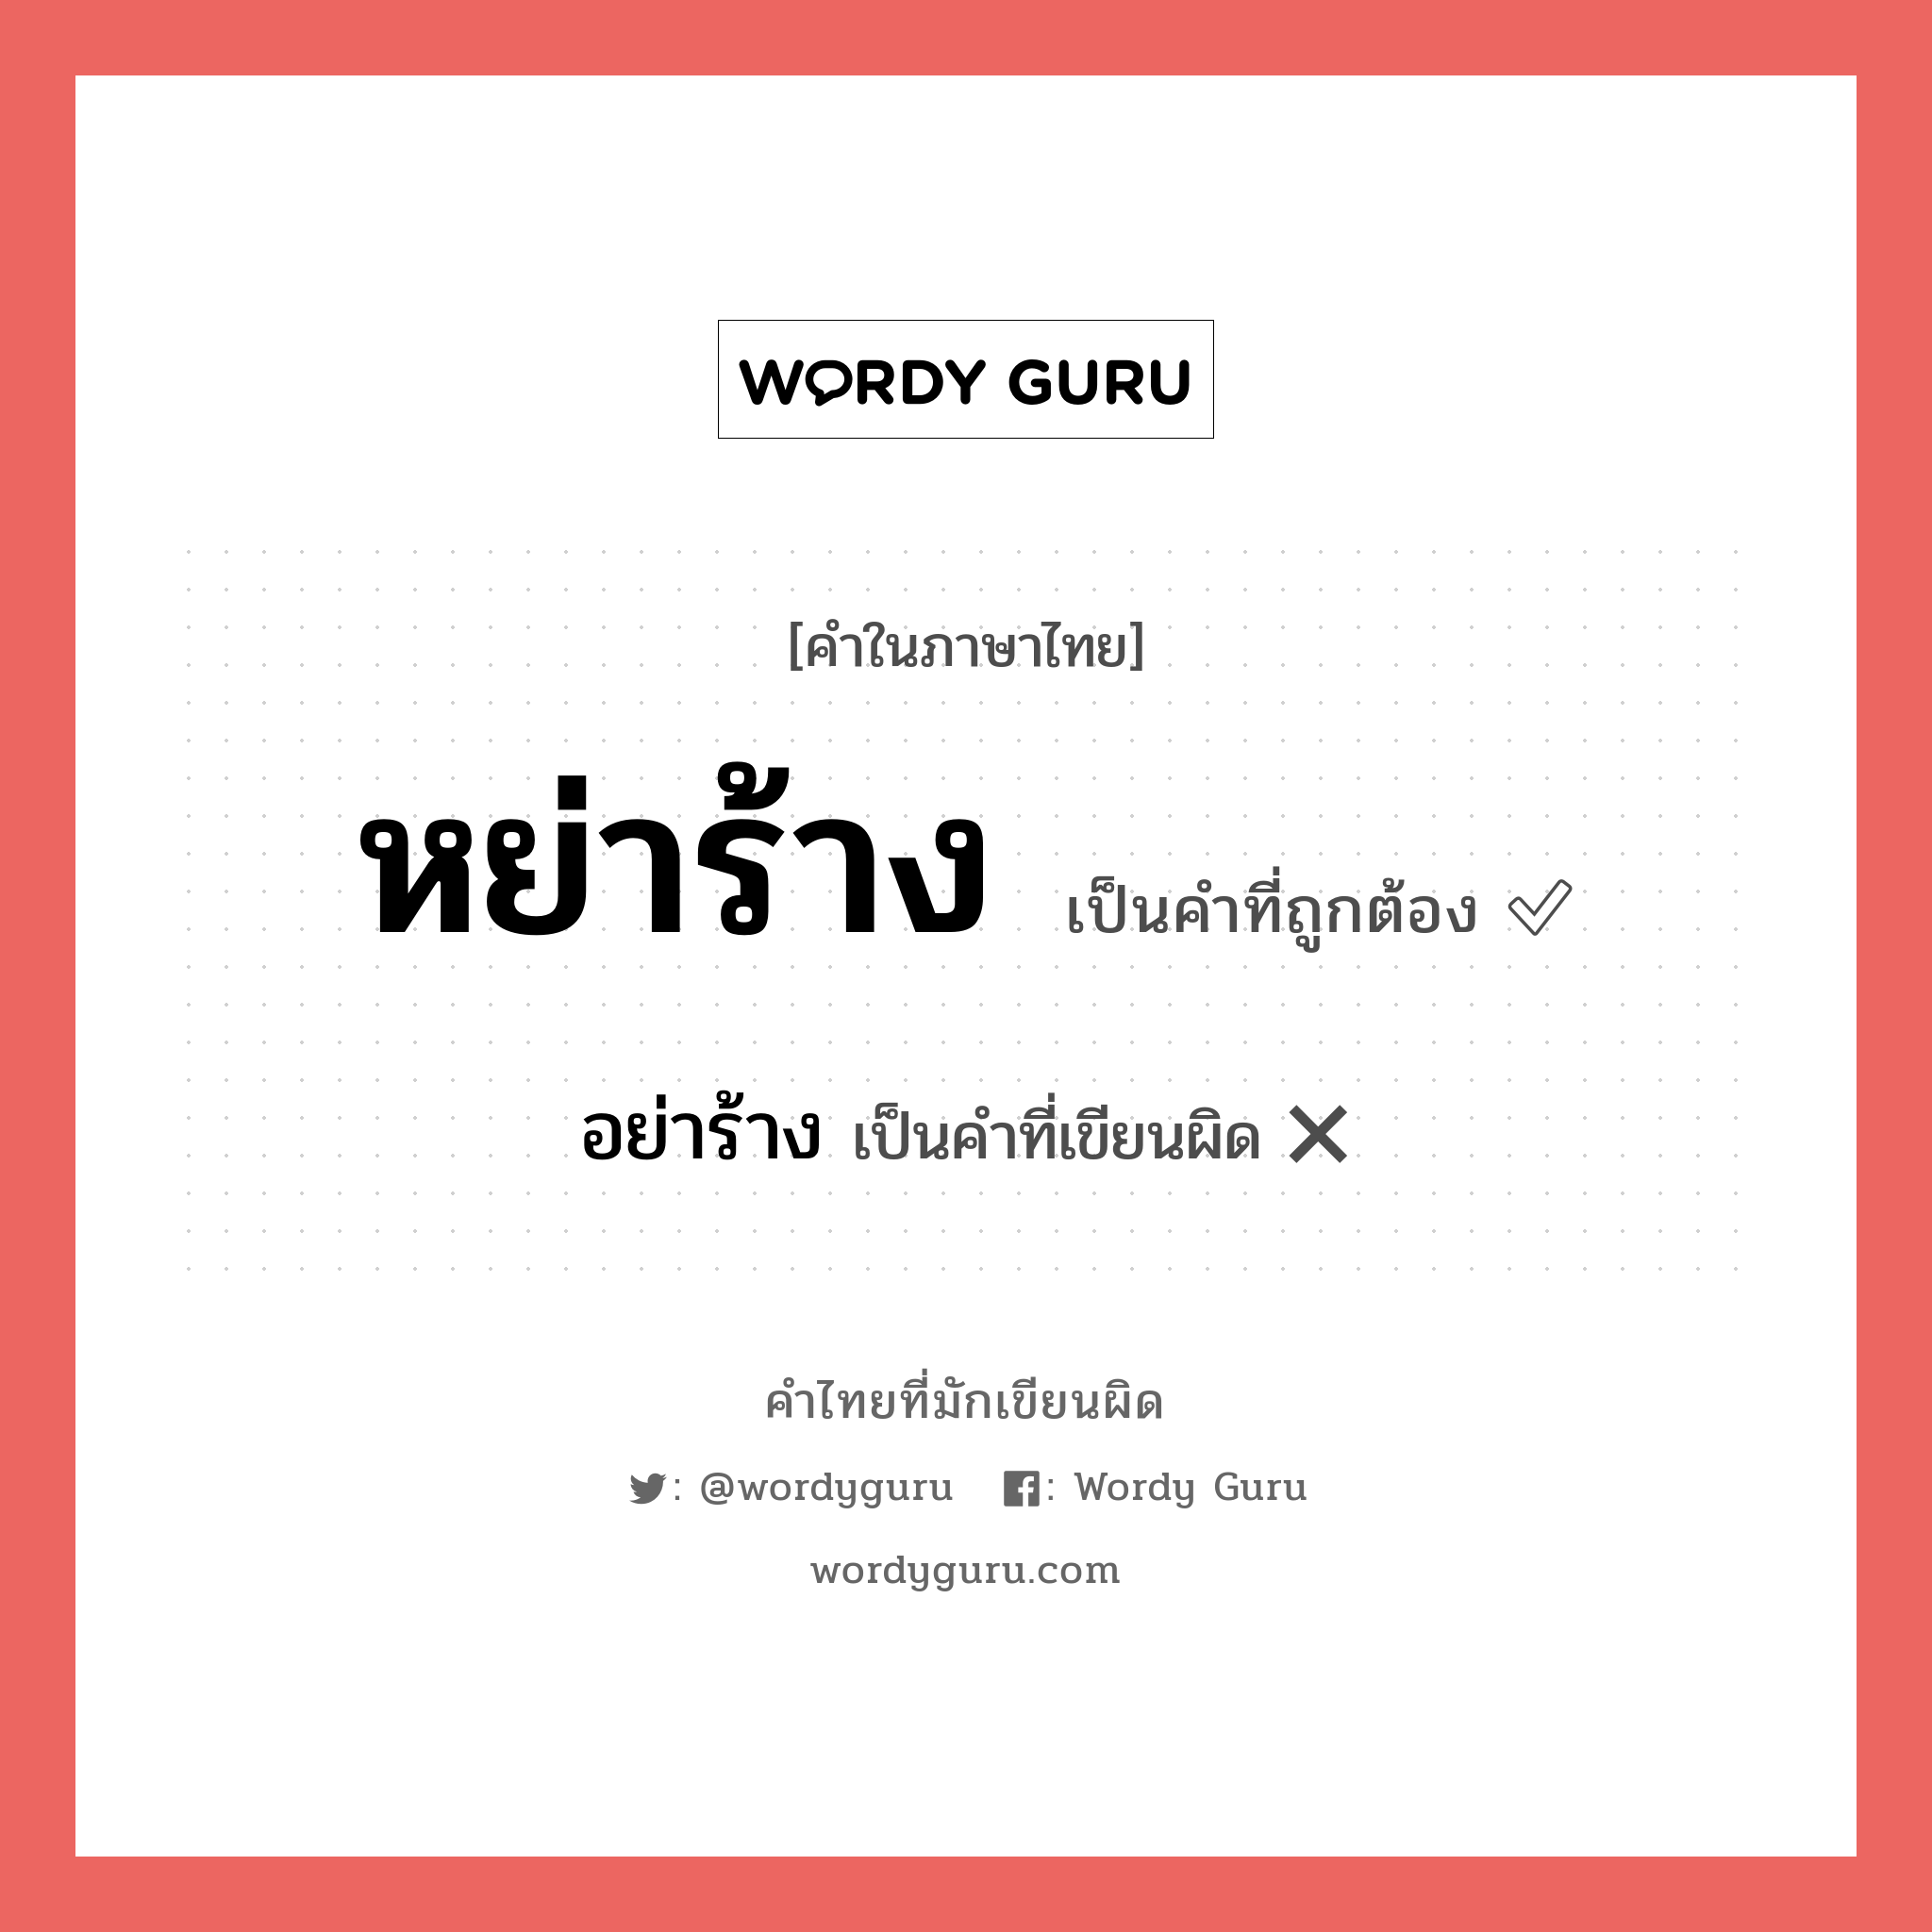 หย่าร้าง หรือ อย่าร้าง คำไหนเขียนถูก?, คำในภาษาไทยที่มักเขียนผิด หย่าร้าง คำที่ผิด ❌ อย่าร้าง